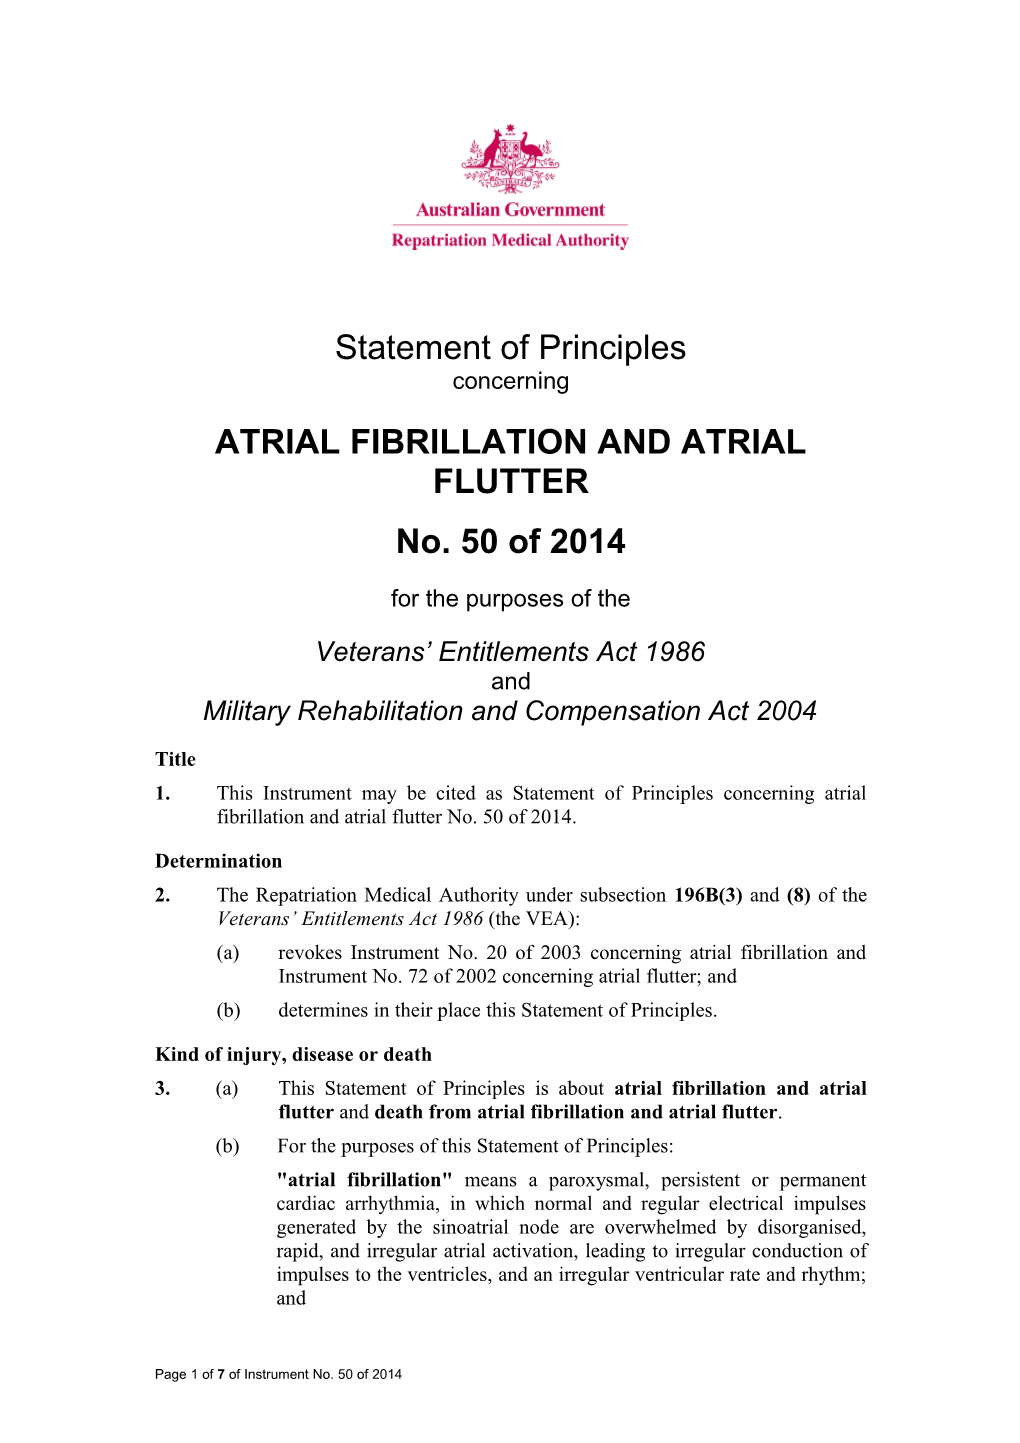 Atrial Fibrillation and Atrial Flutter